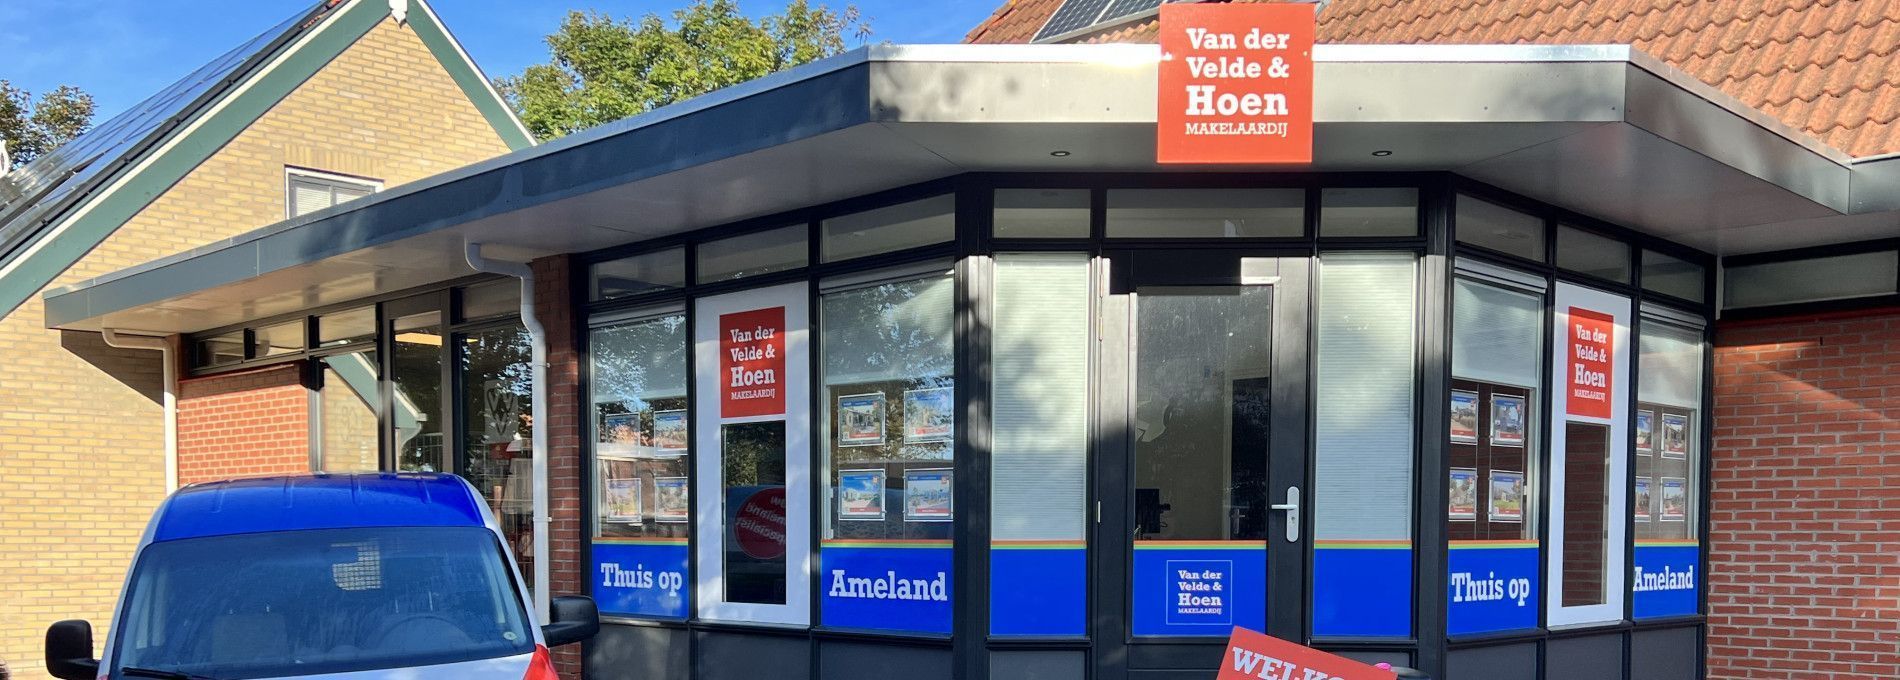 Van der Velde & Hoen Real Estate - VVV Ameland